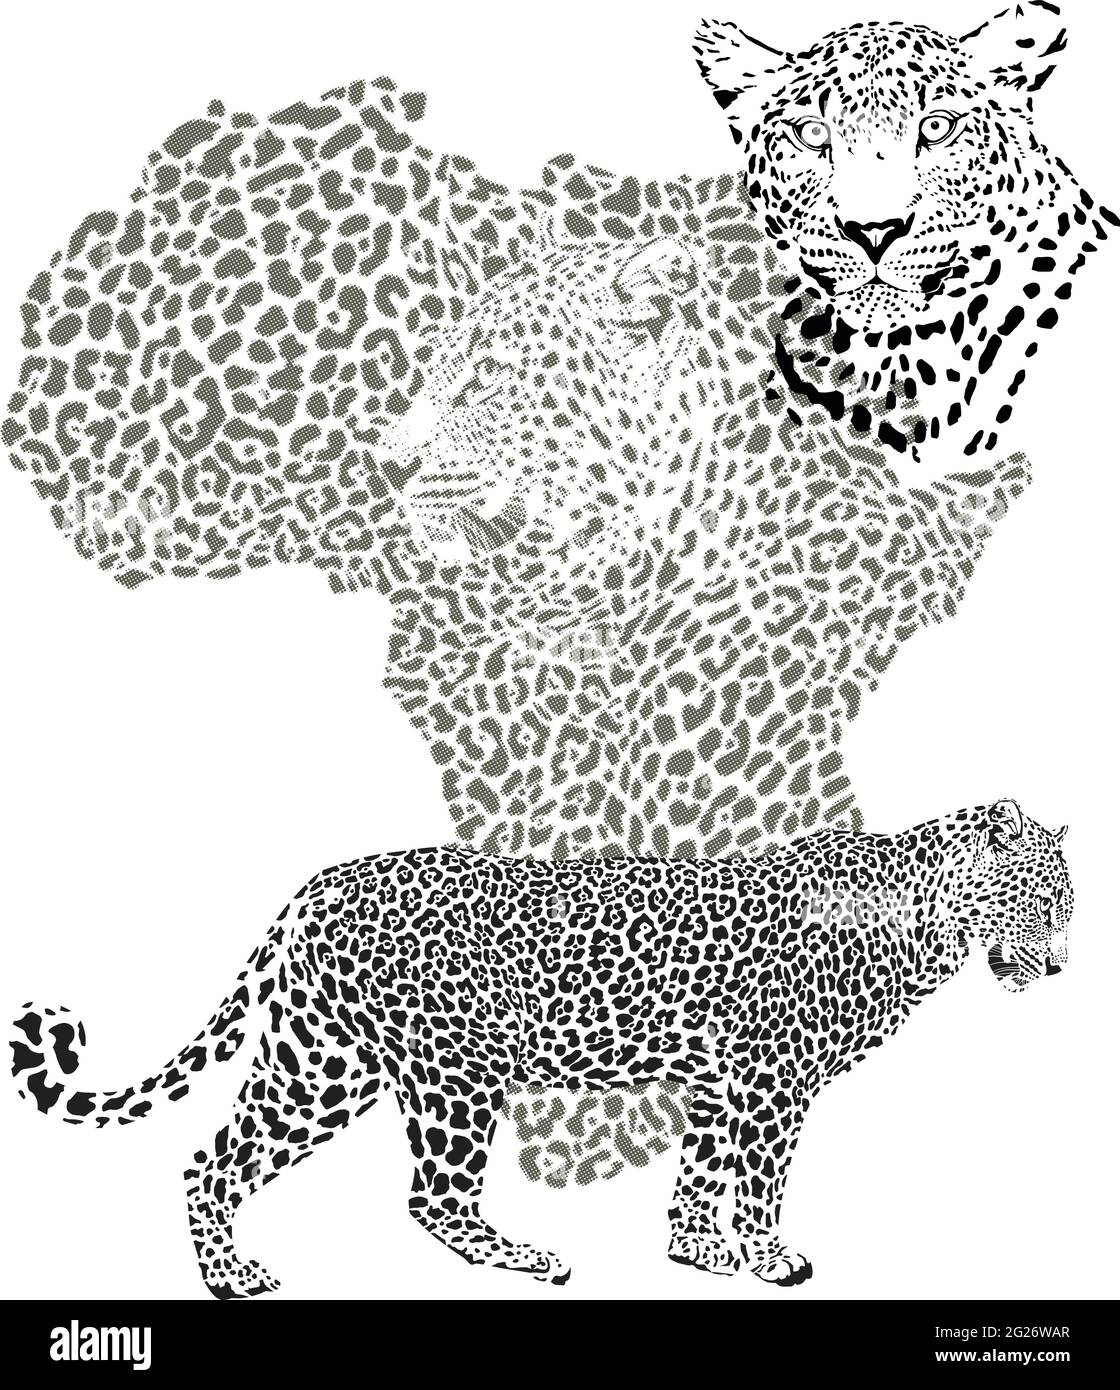 Sfondo con mappa del continente africano con leopardo Illustrazione Vettoriale